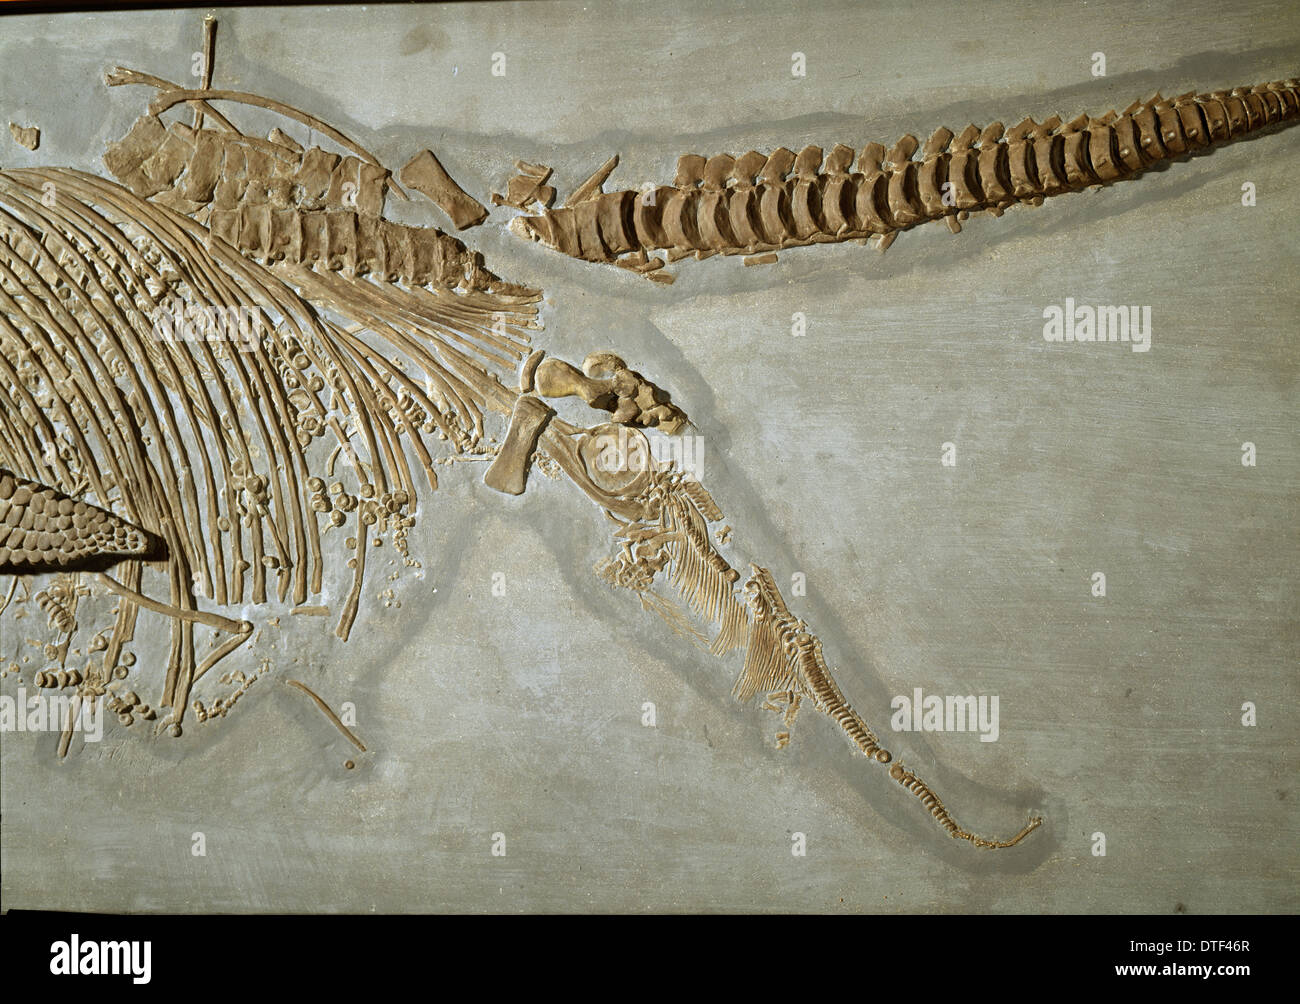 Ichthyosaur, Stenopterygius quadriscissus (Quenstedt) close-up Foto Stock